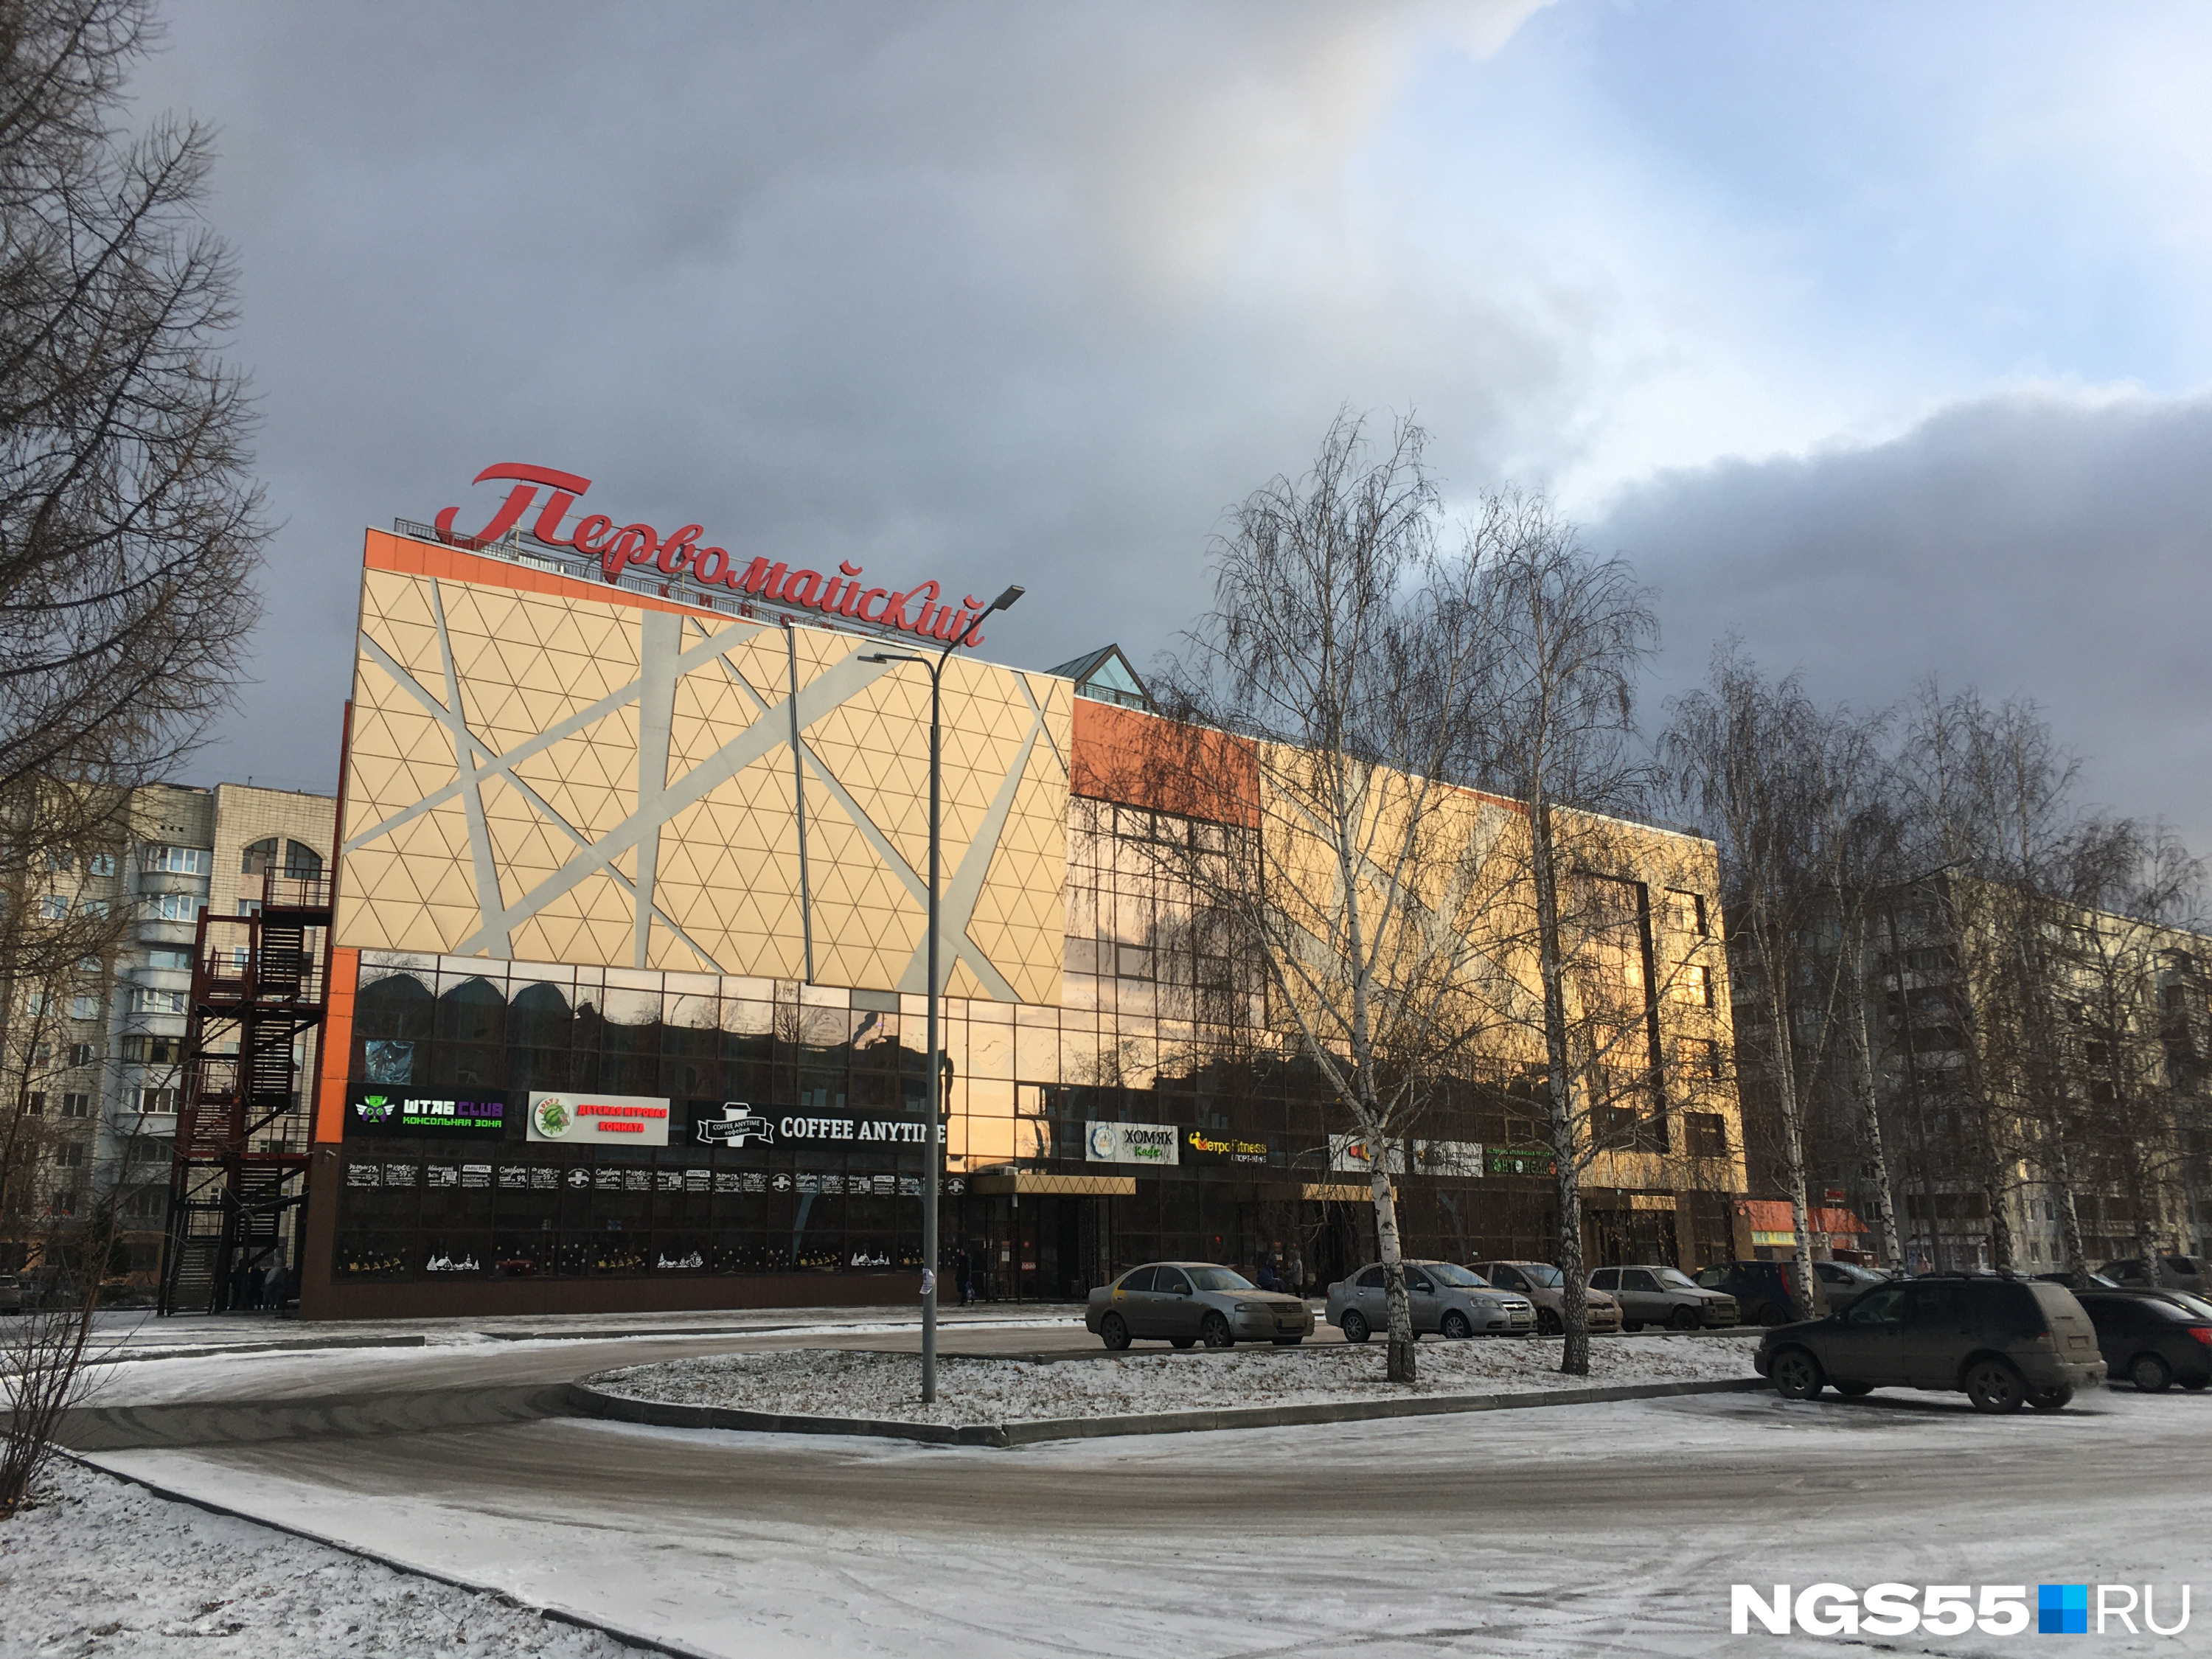 На лицевом фасаде орнамент, напоминающий свет пересекающихся прожекторов из советских фильмов про Великую Отечественную войну